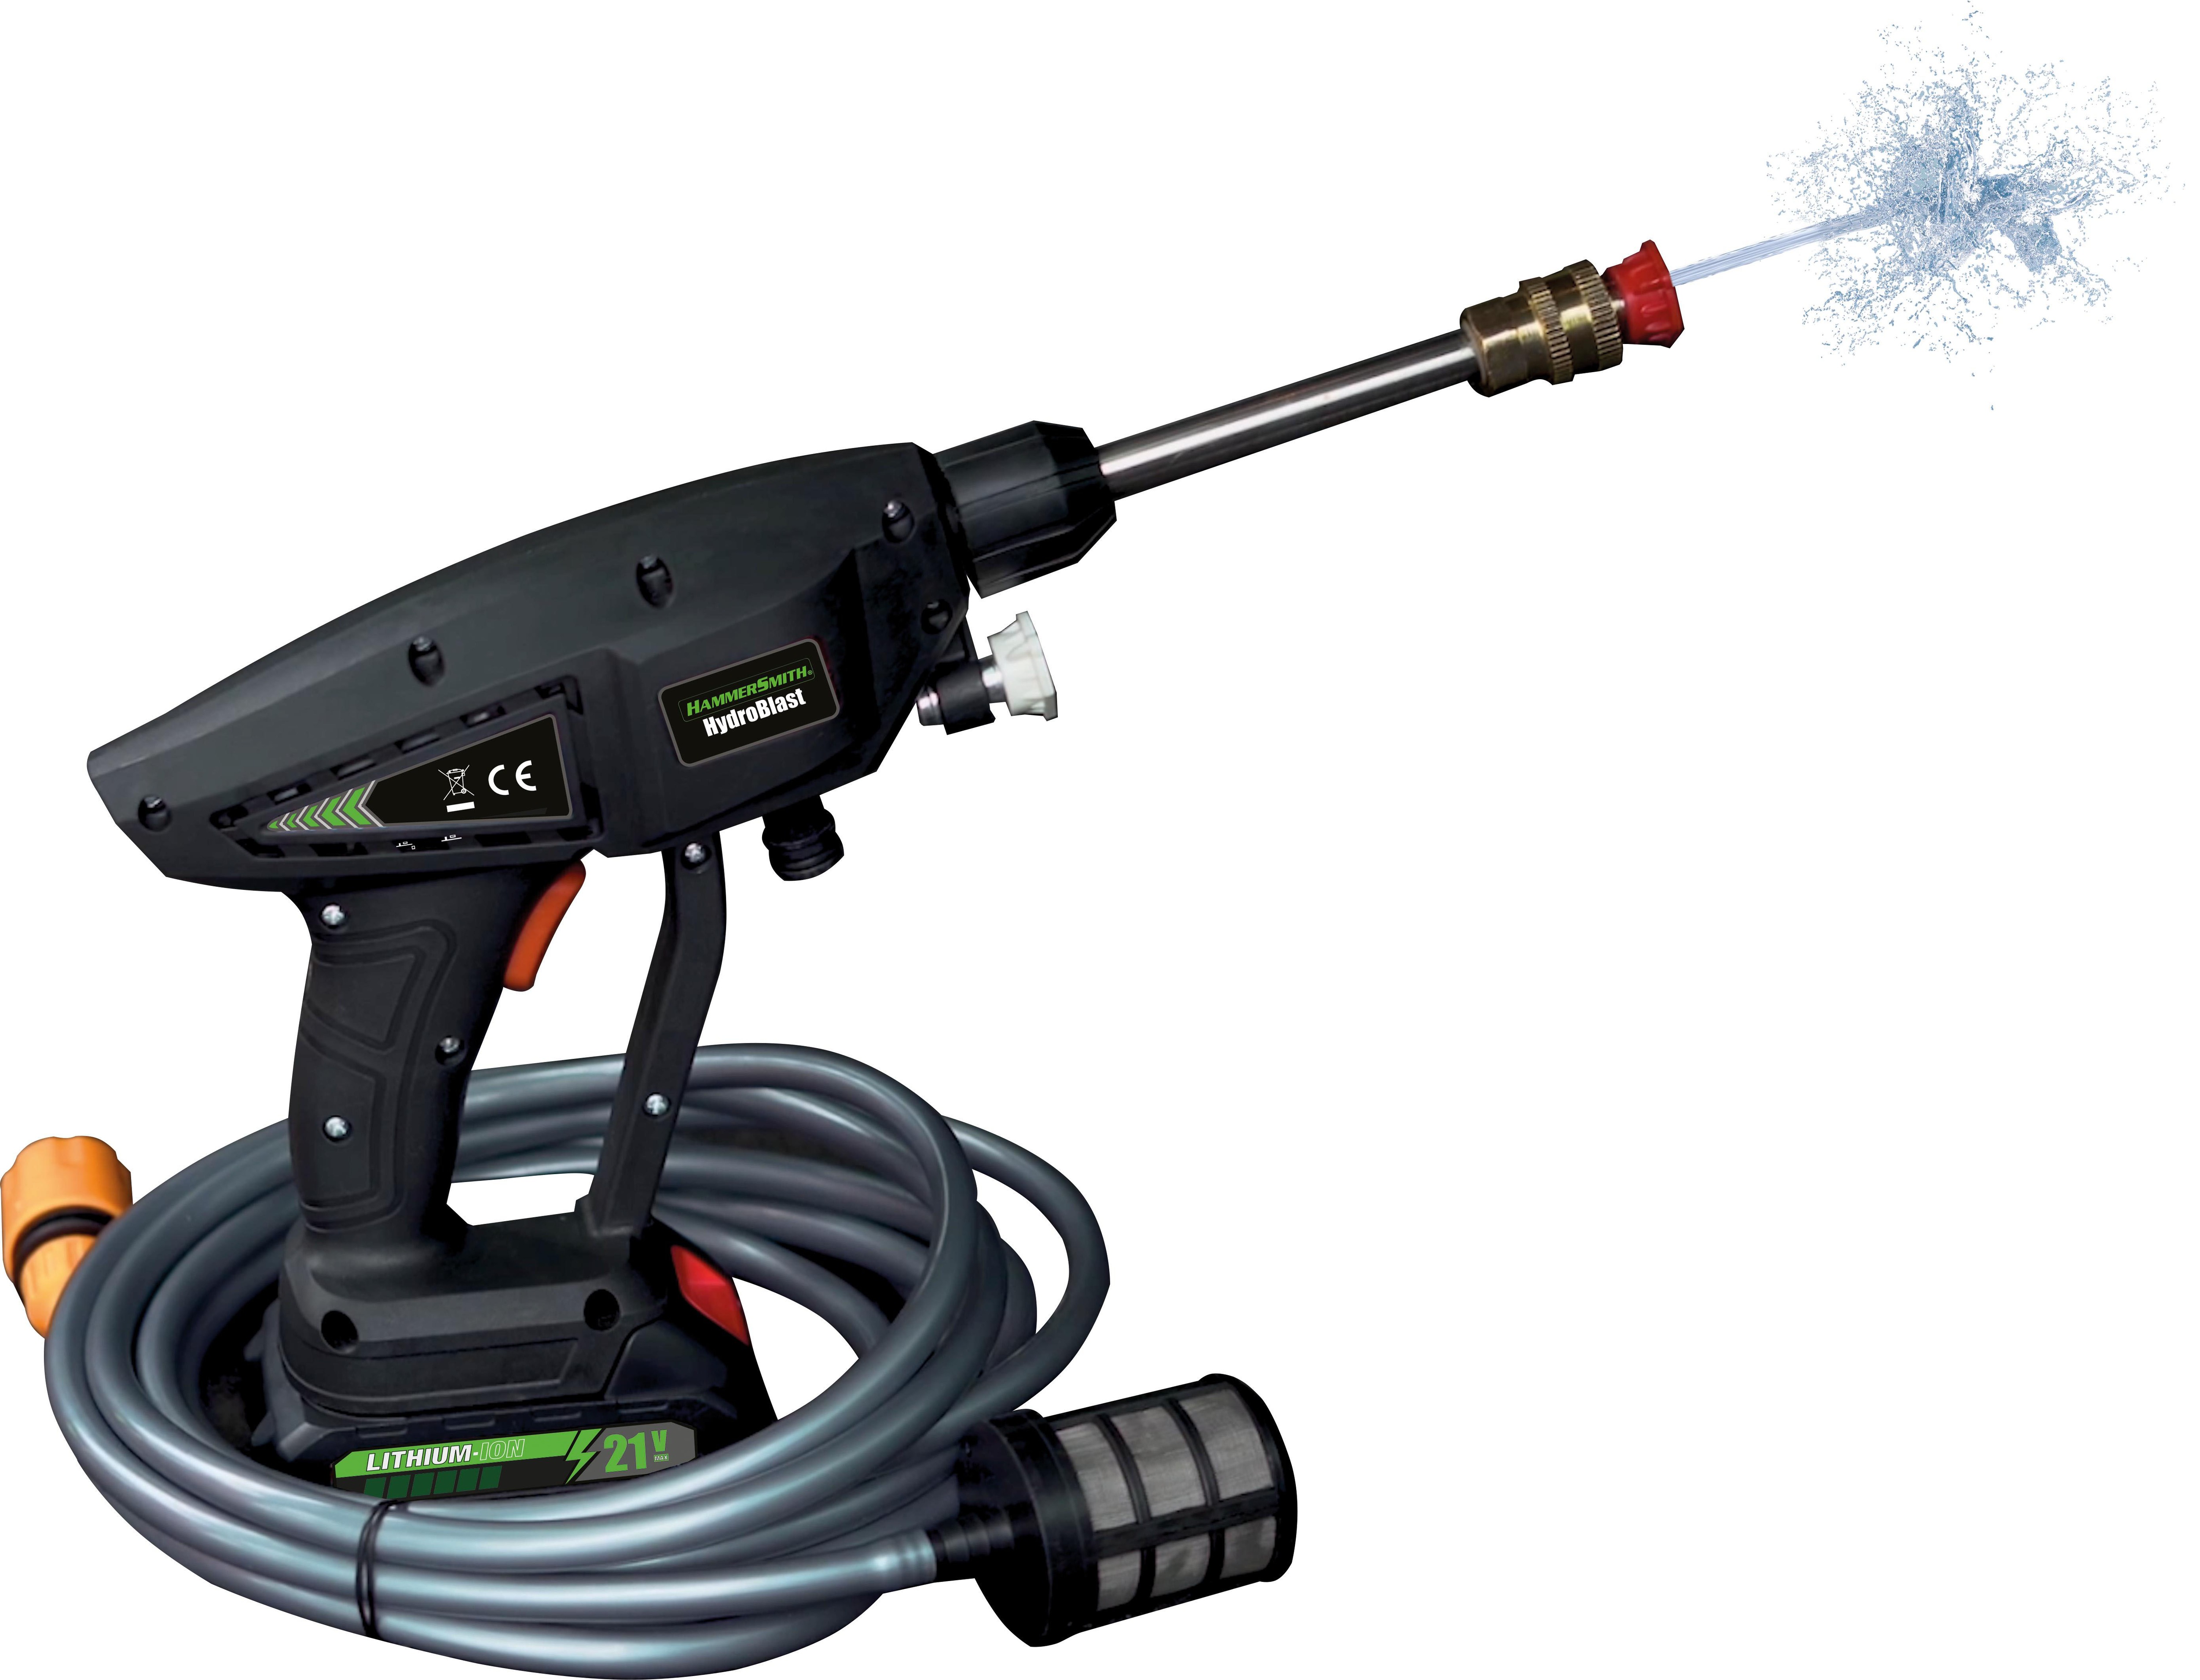 Hammersmith HydroBlast Reinigungspistole - Akku Hochdruckreiniger für Gartenschlauch - 5 m Reichweite - Schaumpistole ohne Kabel - Hochdruckpistole